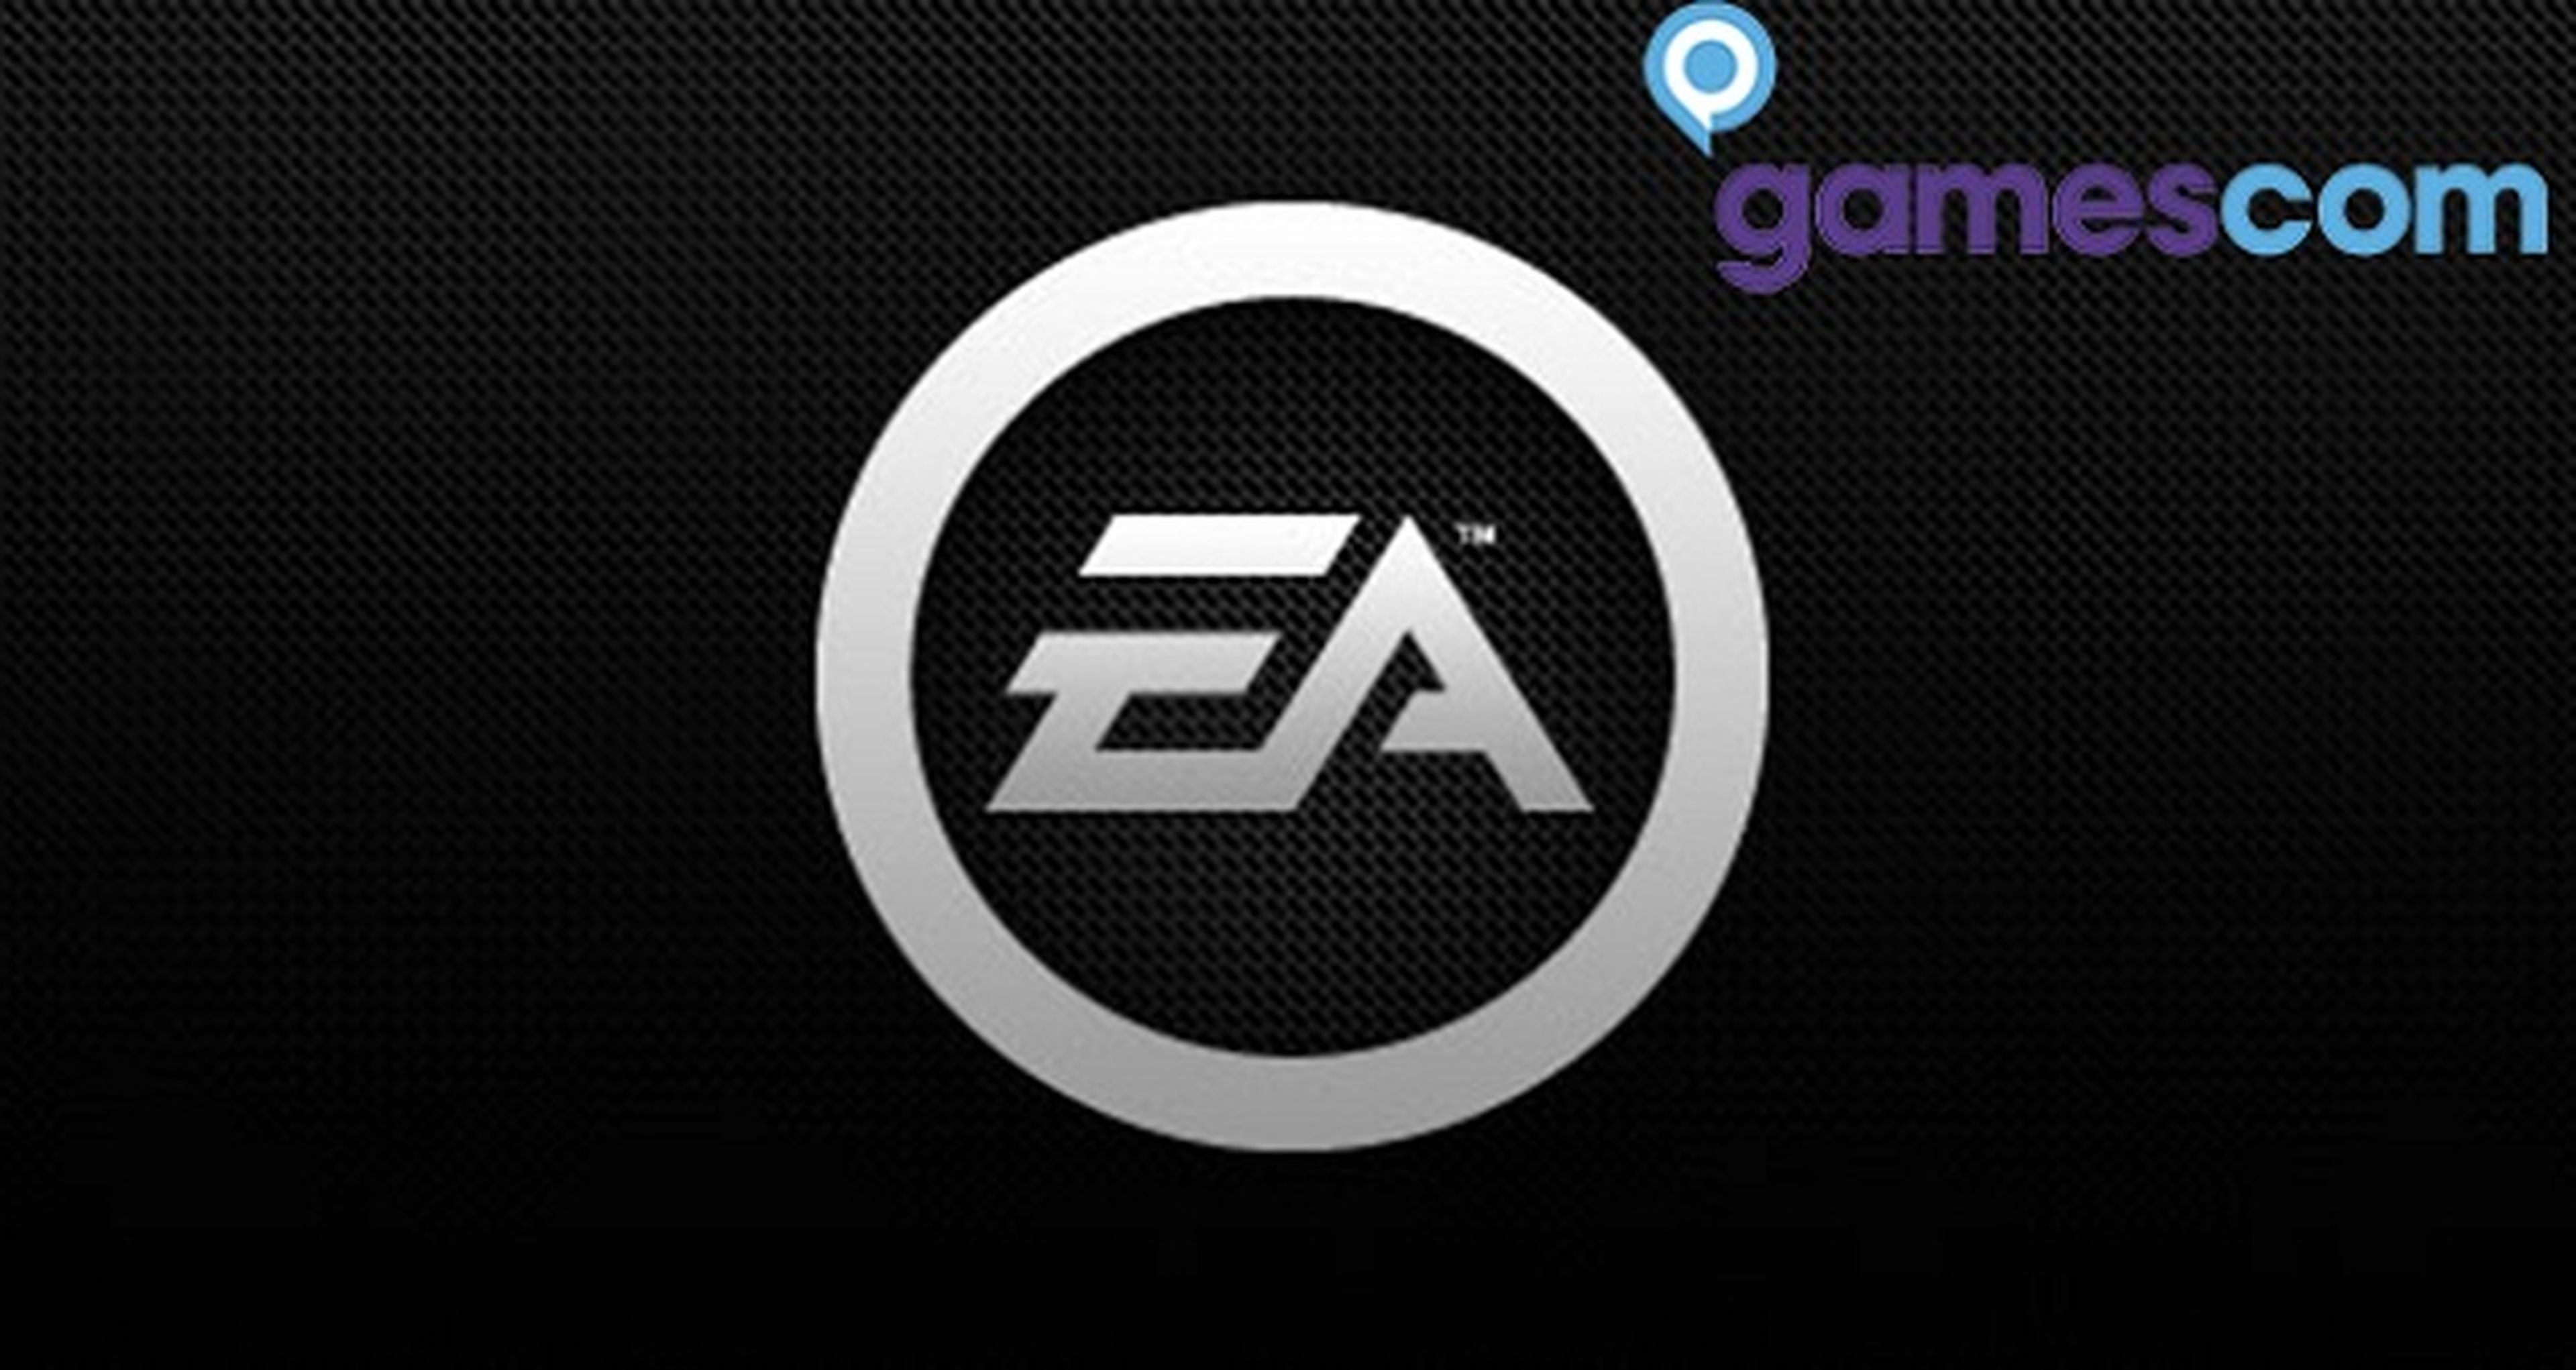 Gamescom 2014: Fecha y hora de la conferencia de Electronic Arts